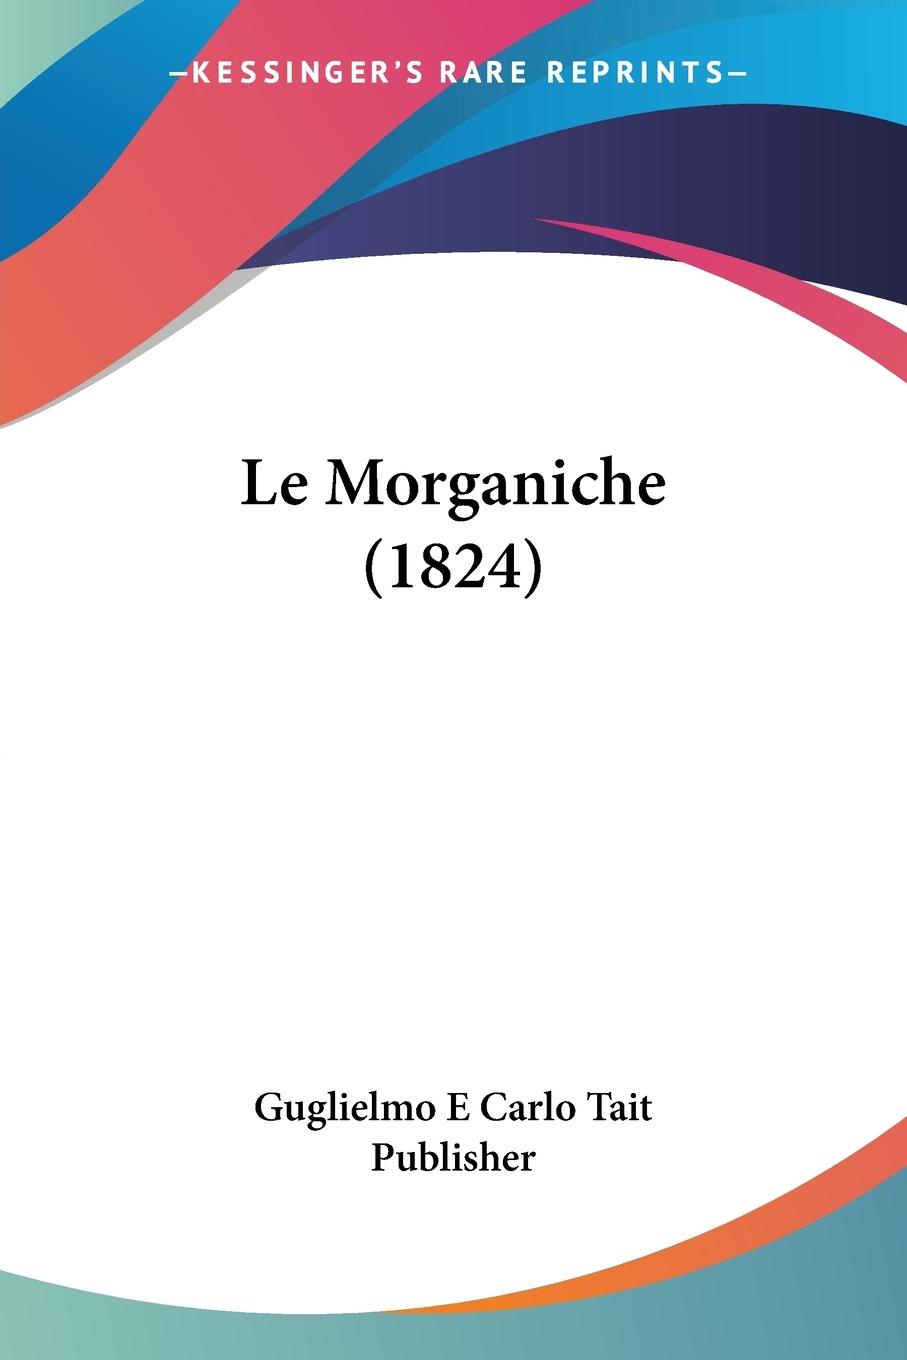 Le Morganiche (1824) - Guglielmo E Carlo Tait Publisher